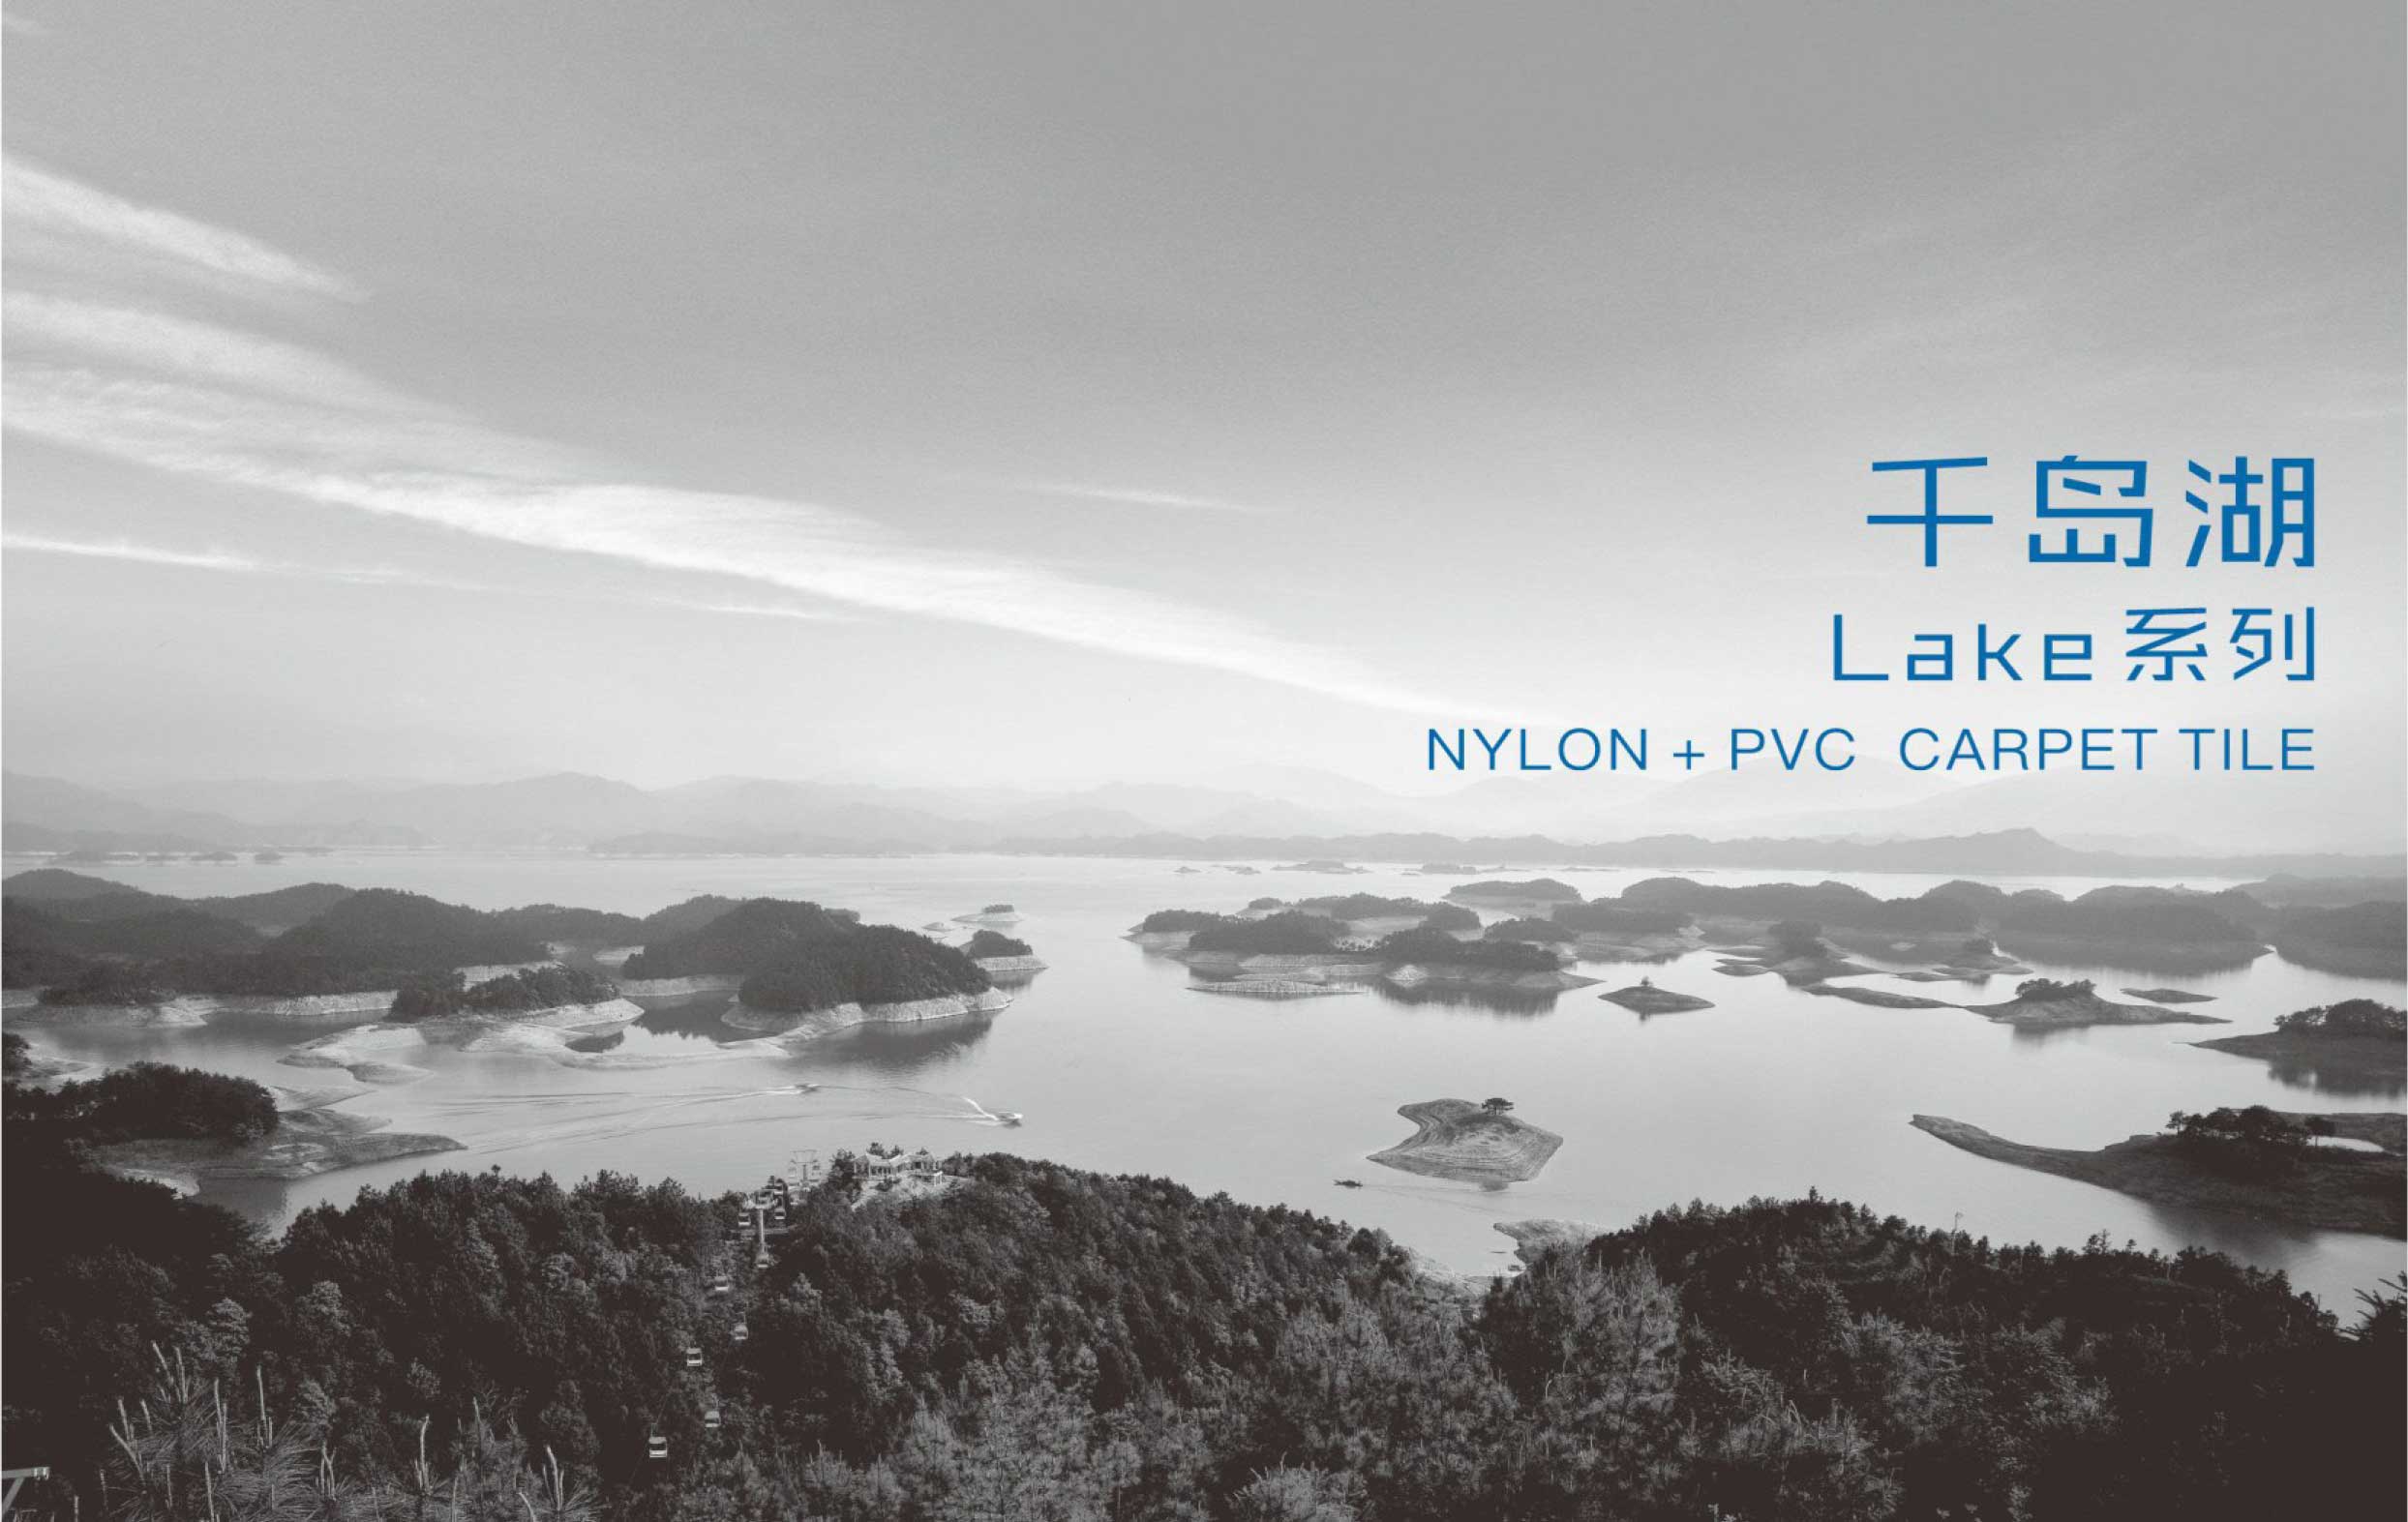   尼龙-PVC底-千岛湖